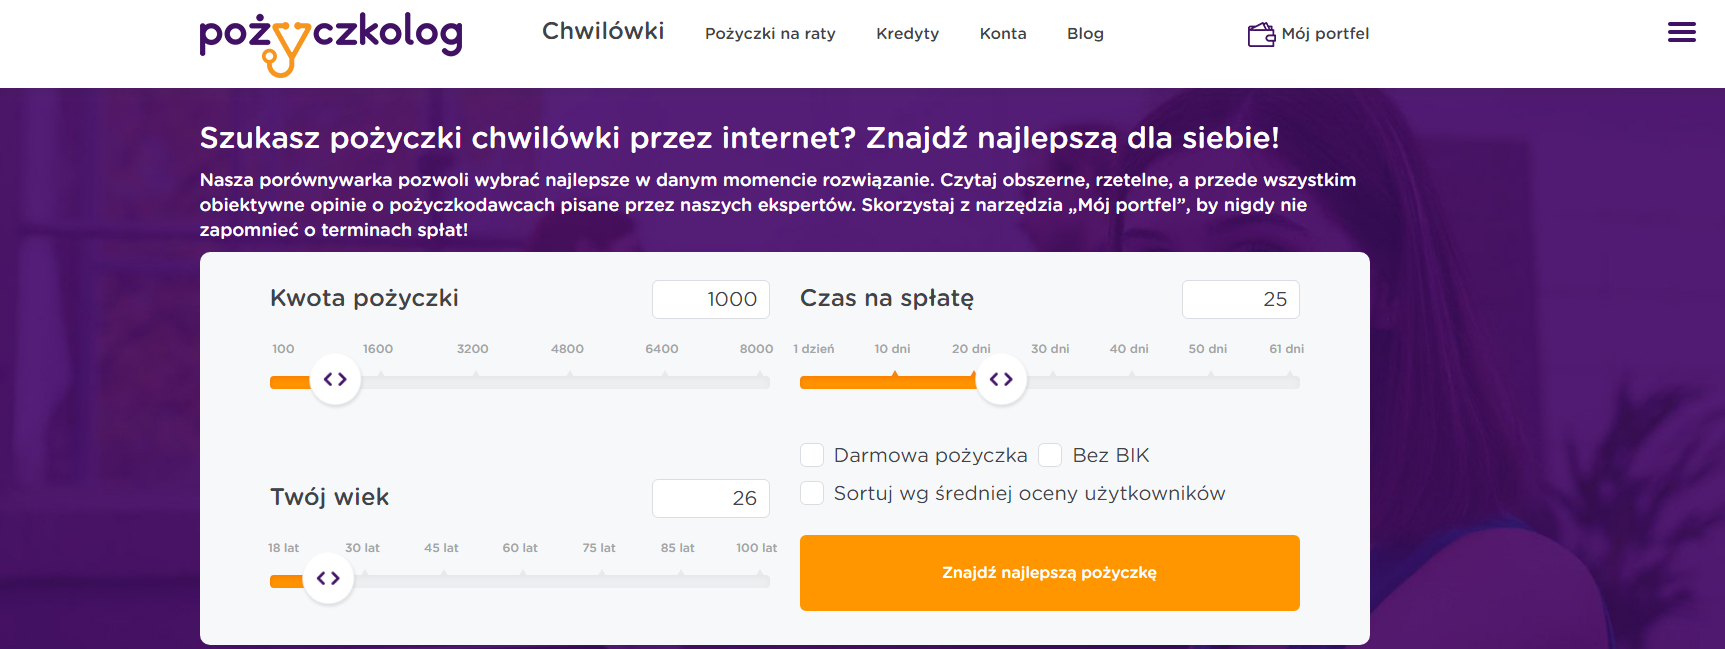 FireShot Capture 8 - Chwilówki online – Sprawdzone pożyczki przez interne_ - https___pozyczkolog.pl_